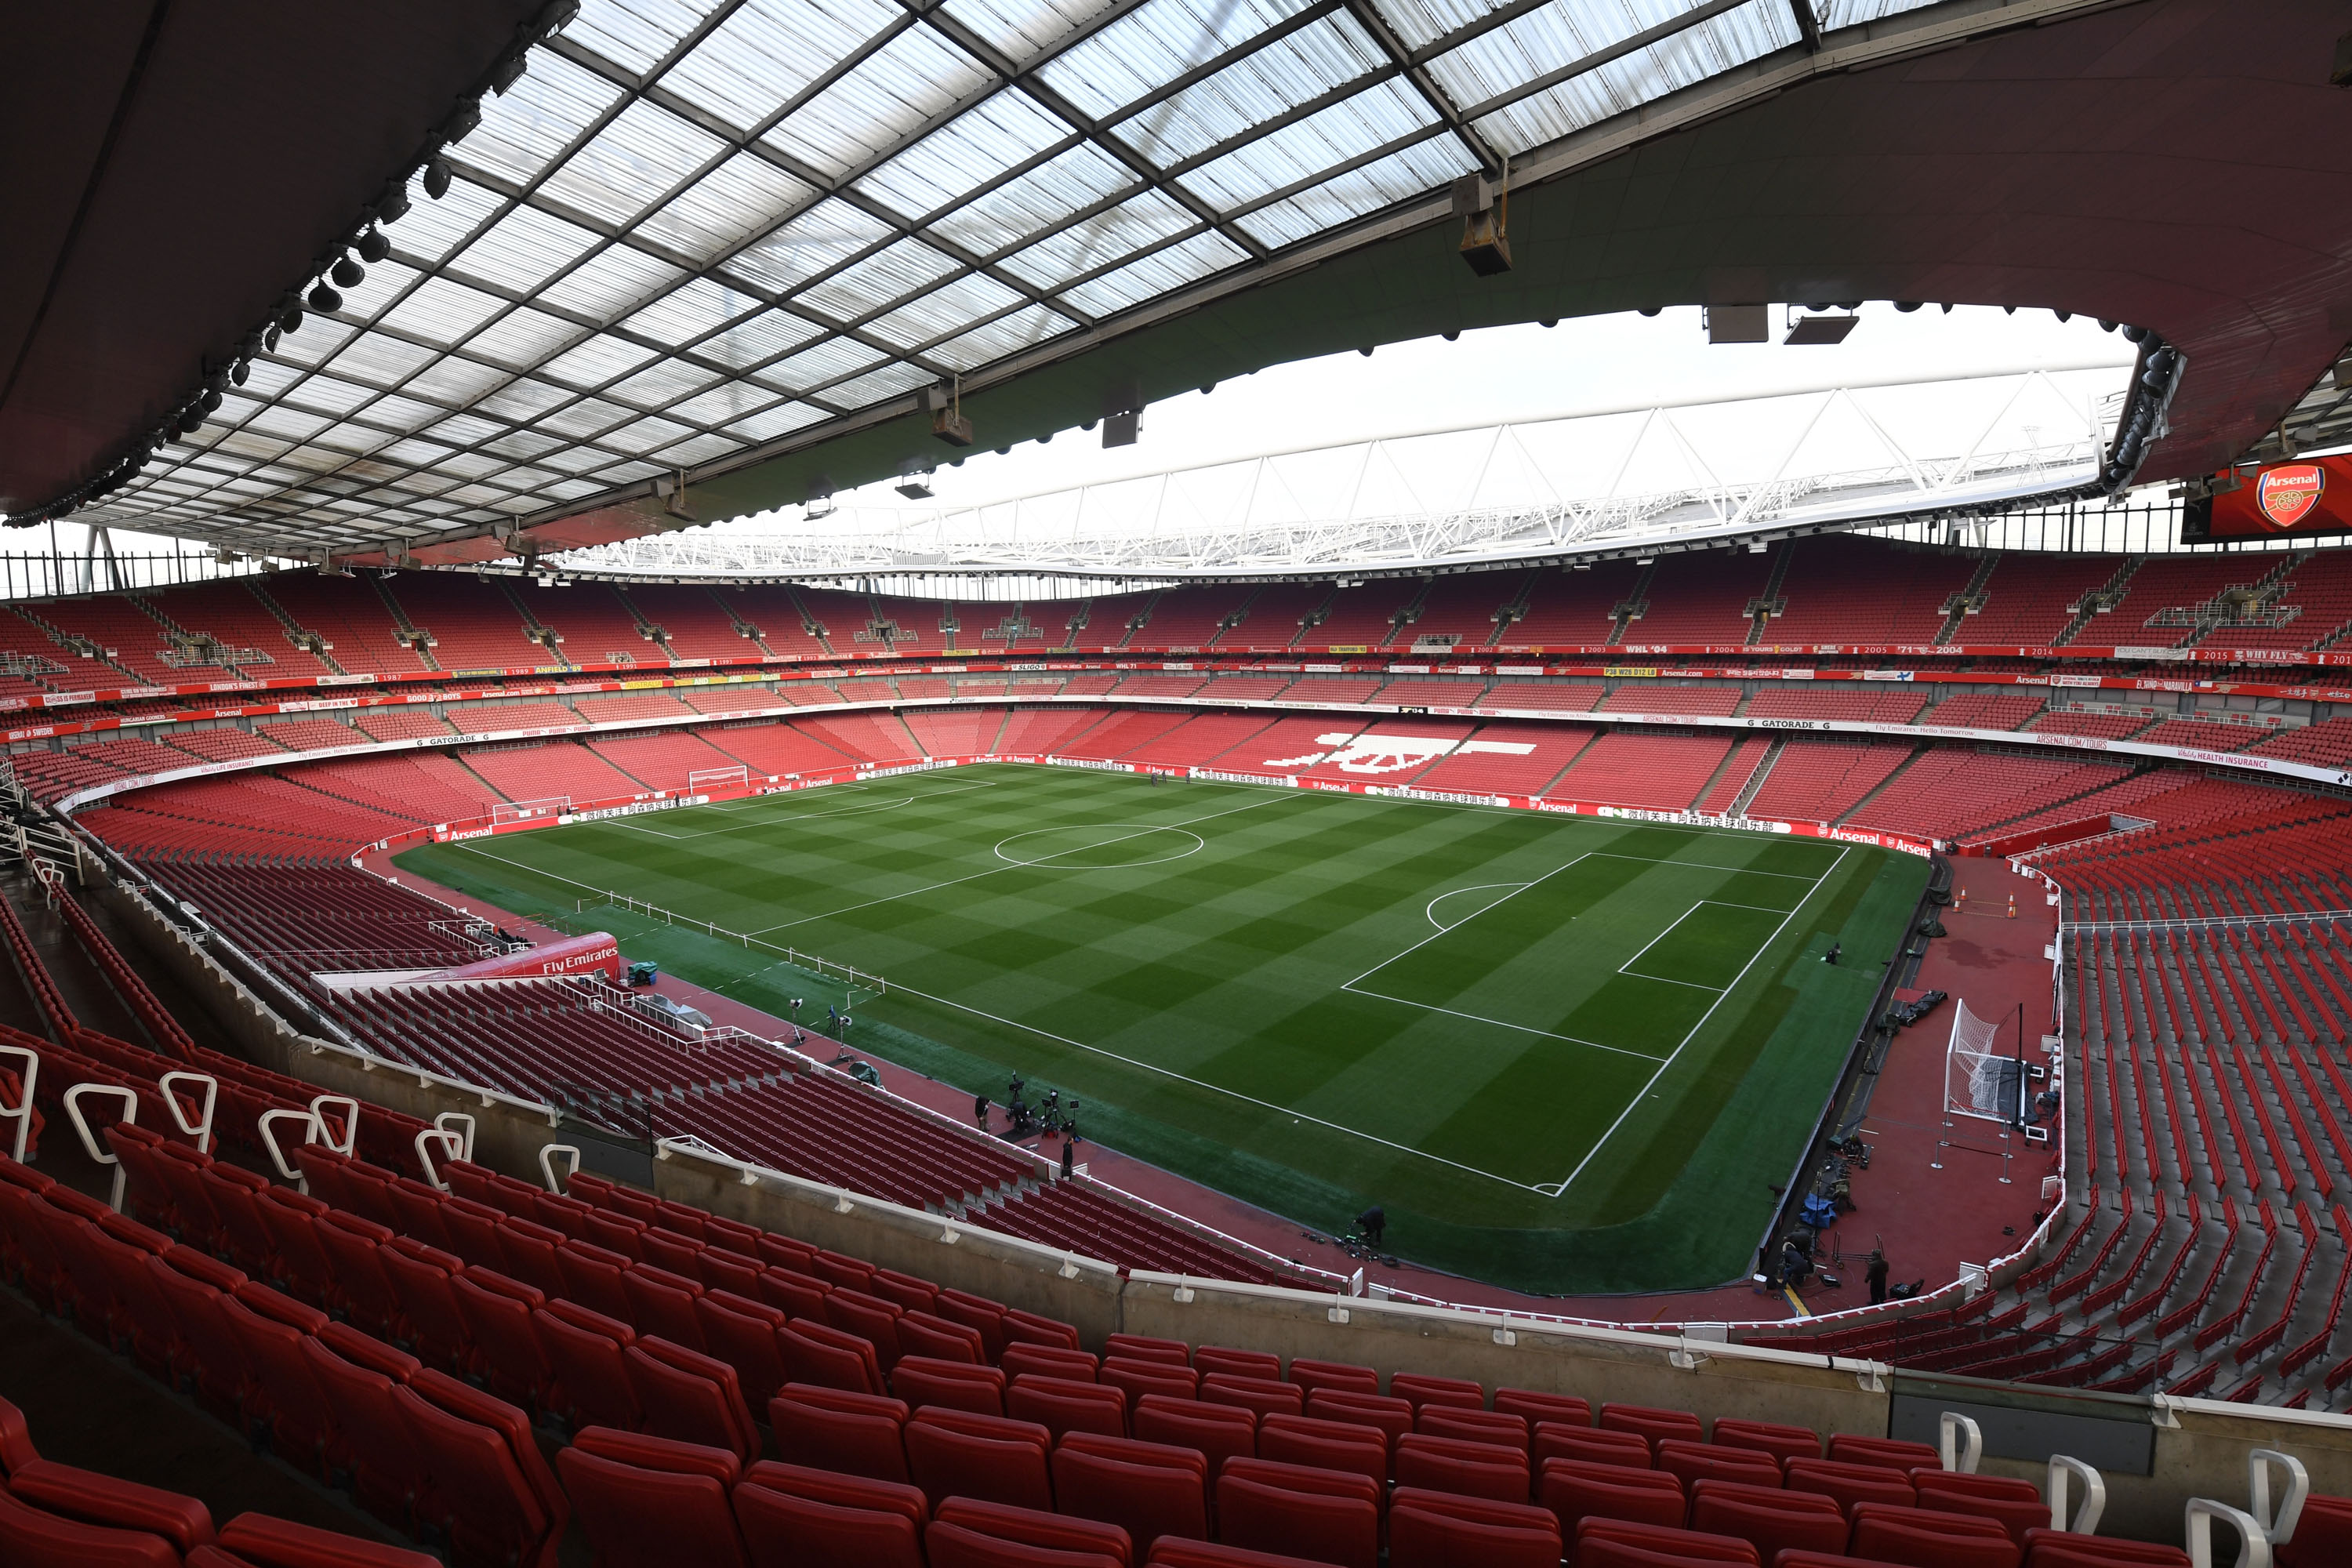 Emirates stadium photo